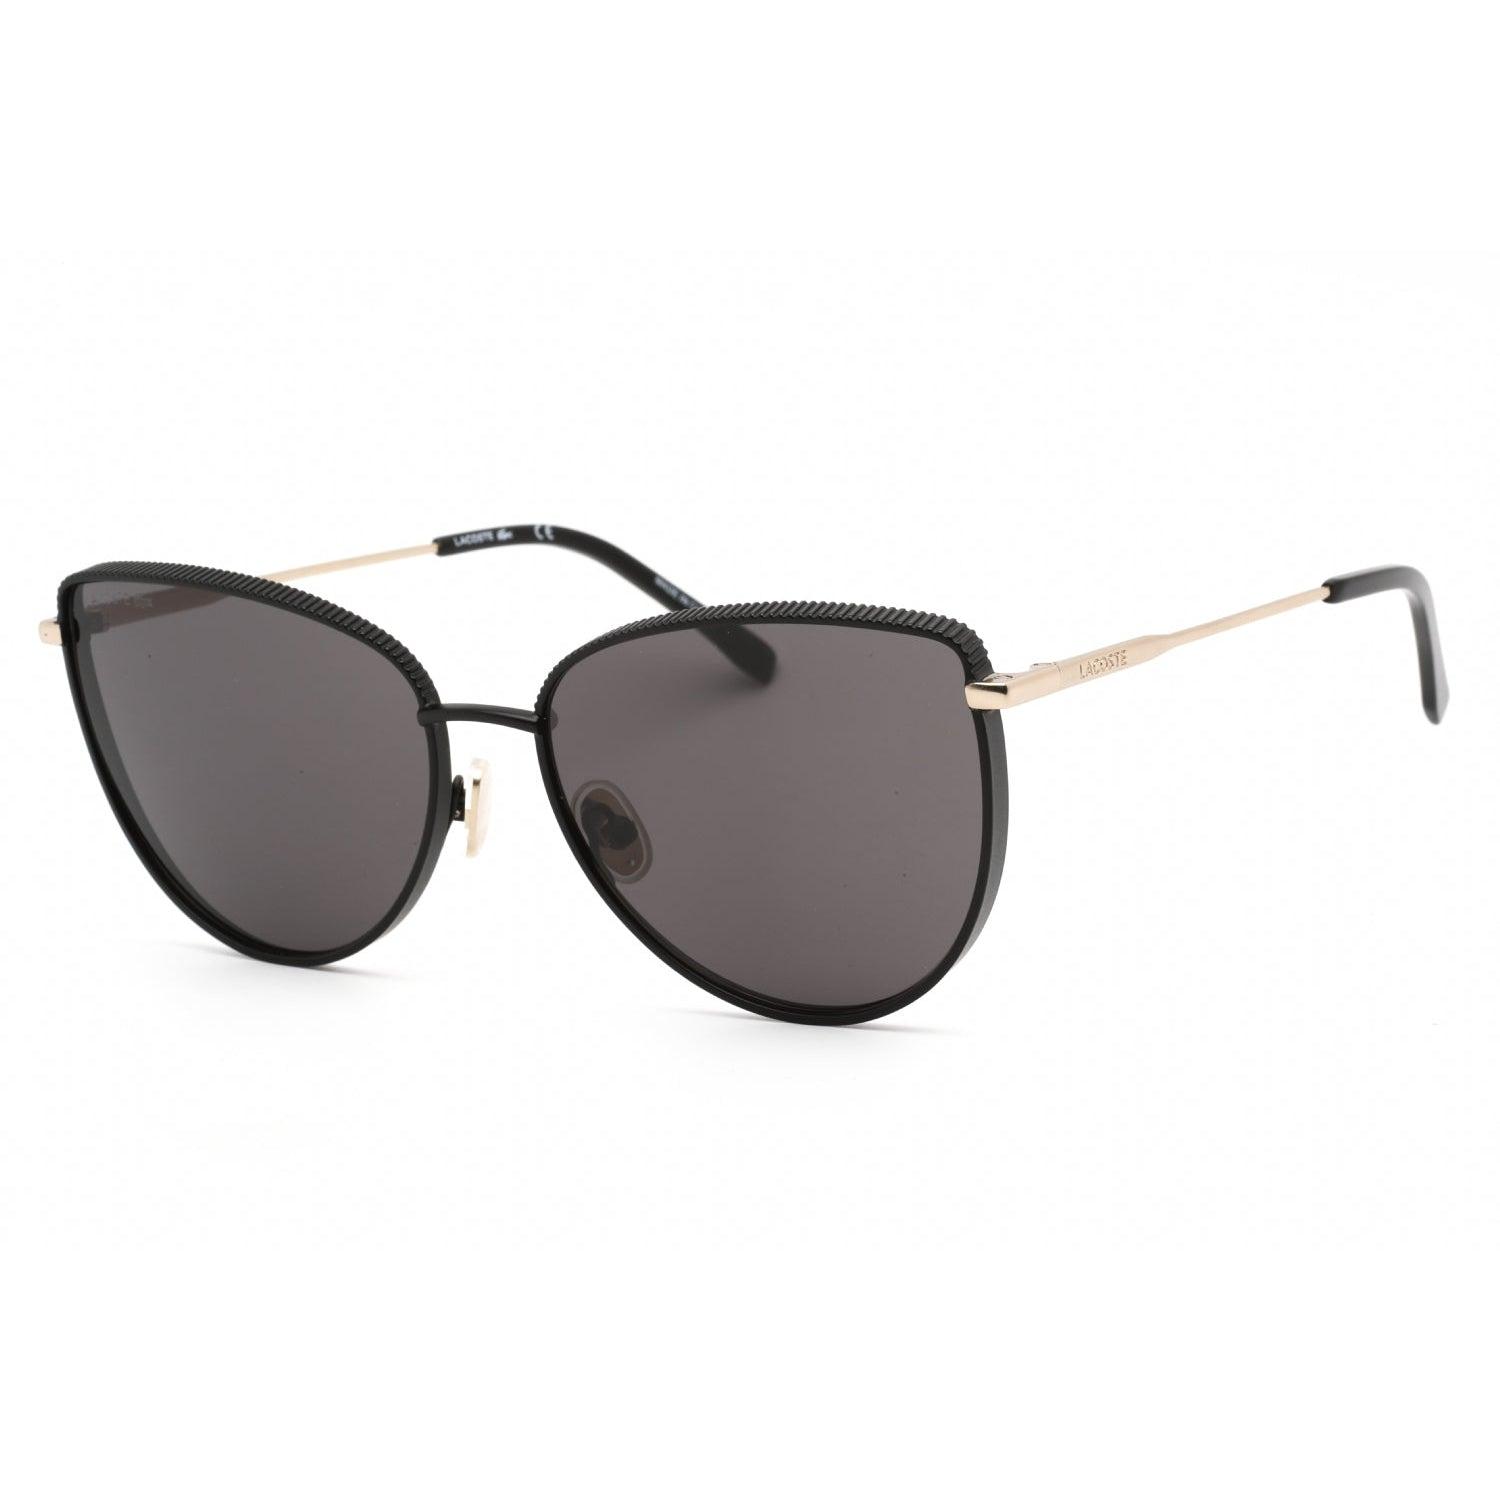 Lacoste L230s Sunglasses Matte Black / Grey in Gray | Lyst